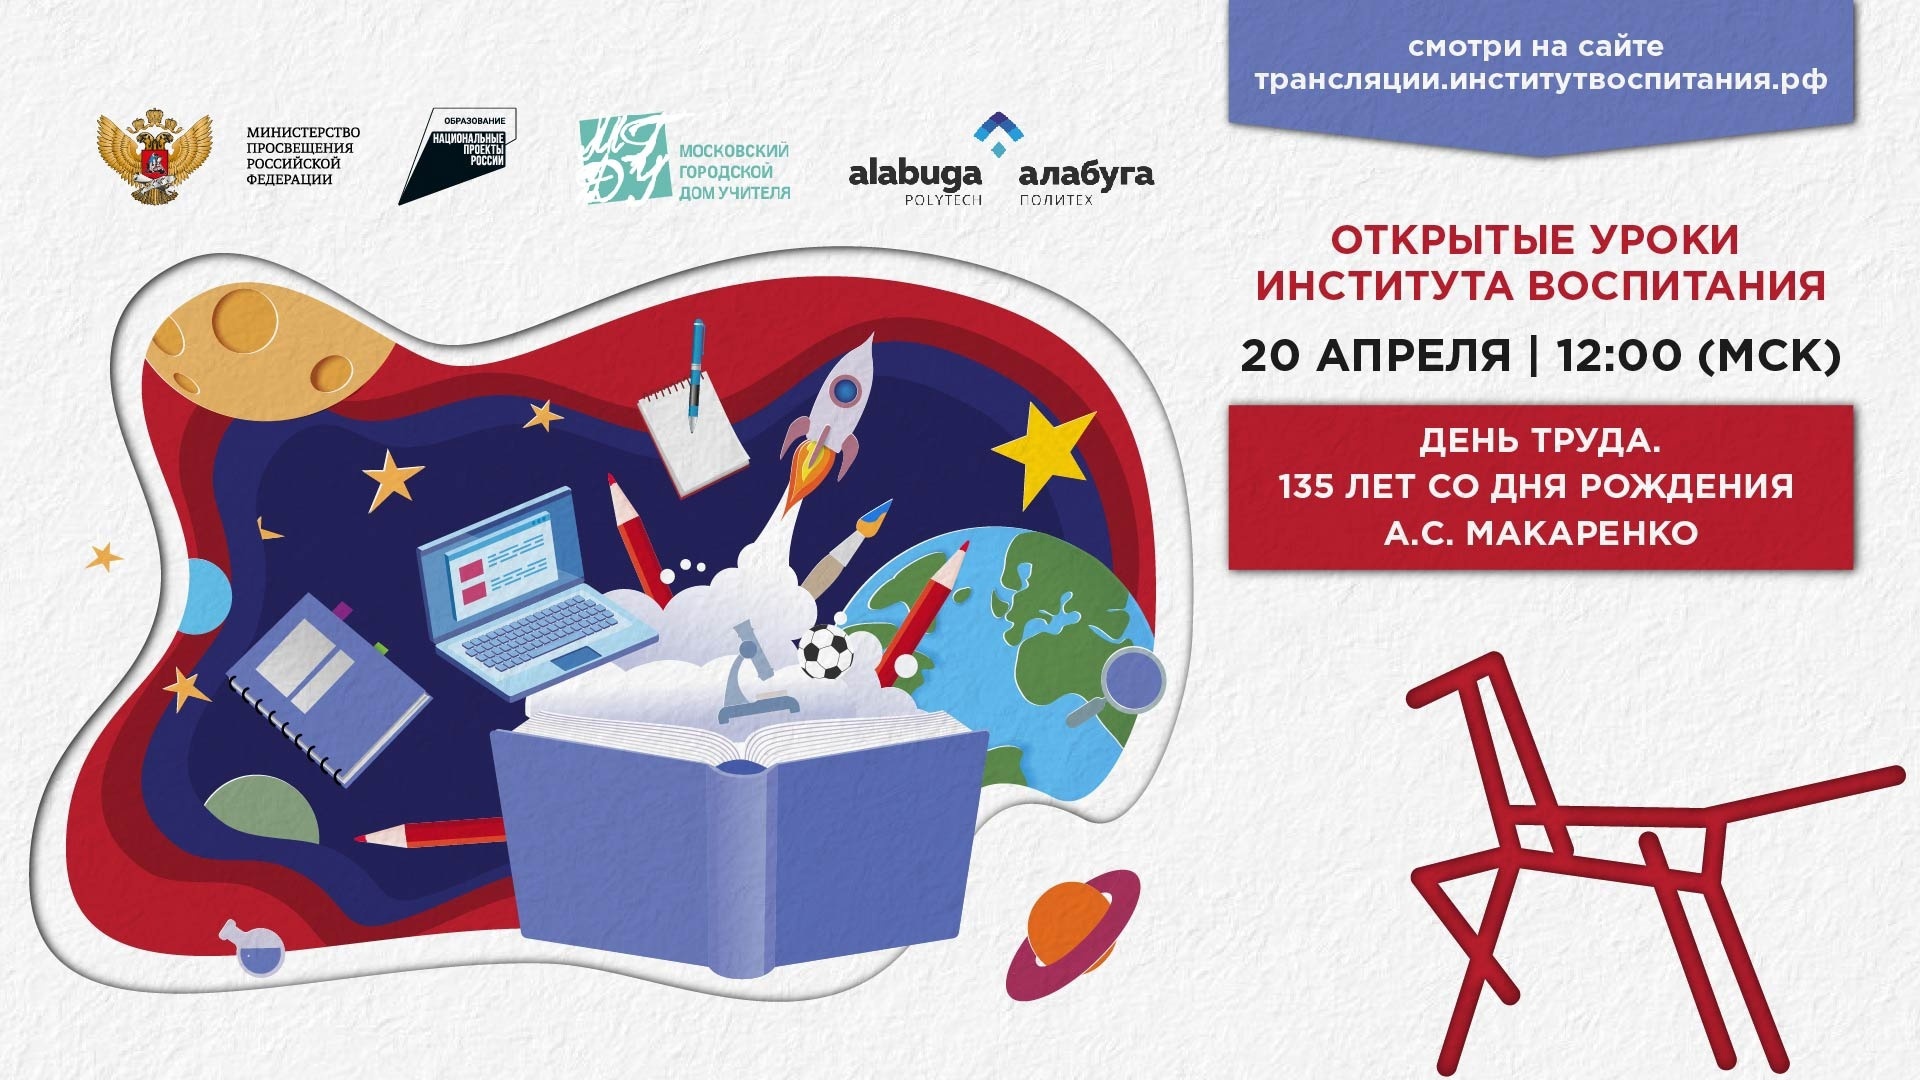 20 апреля - всероссийский урок, приуроченный ко Дню труда и 135-летию со дня рождения Антона Макаренко.